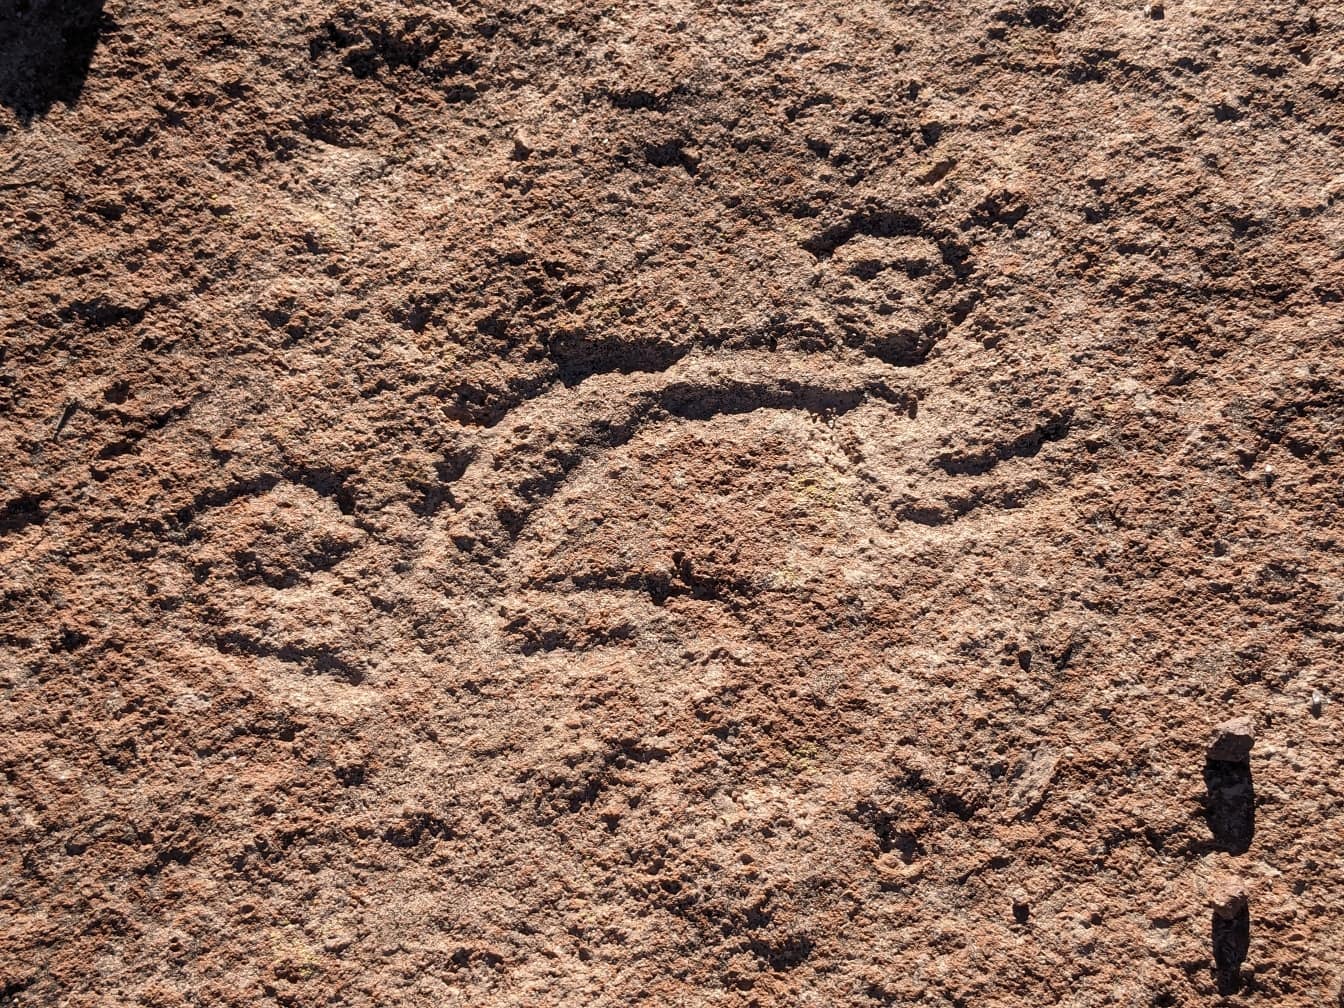 Naif taş oymaları, Güney Amerika’daki bir petroglif neolitik döneme ait olabilir